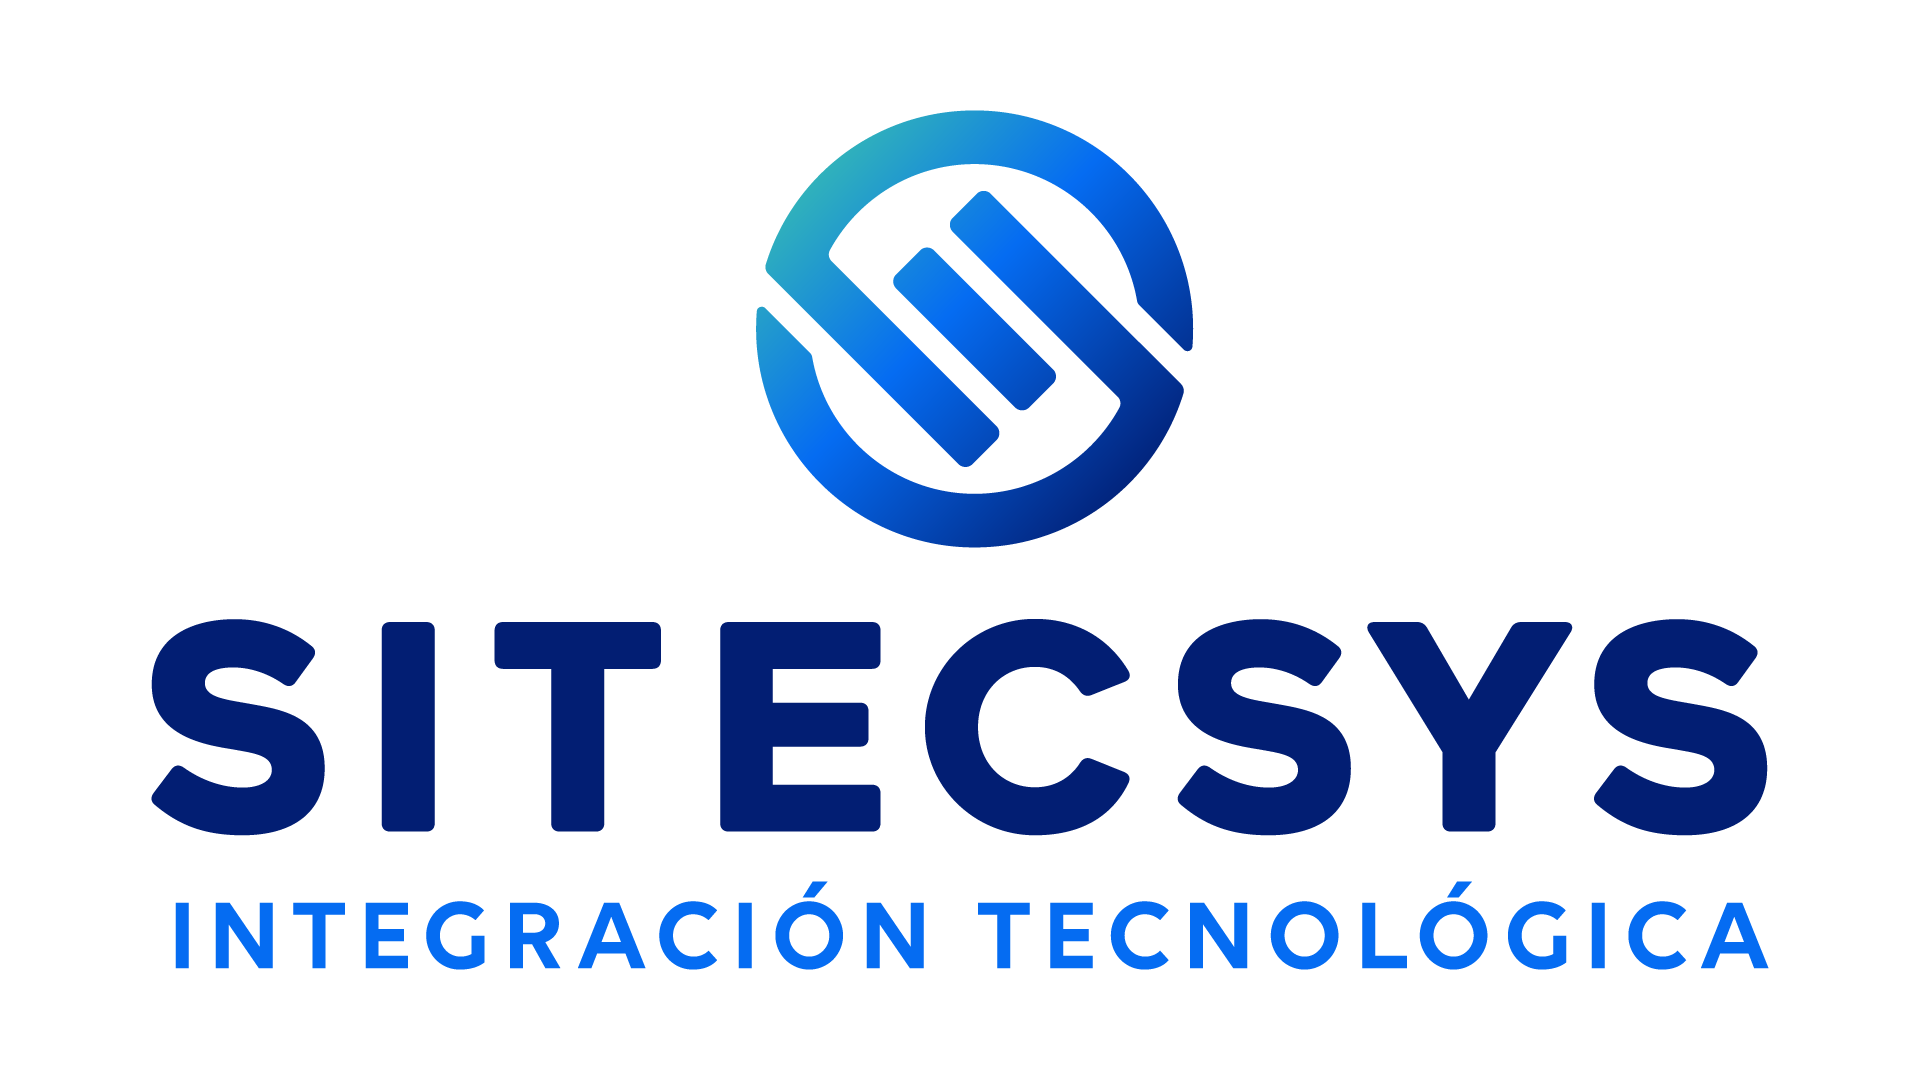 Sitecsys - Integración Tecnológica